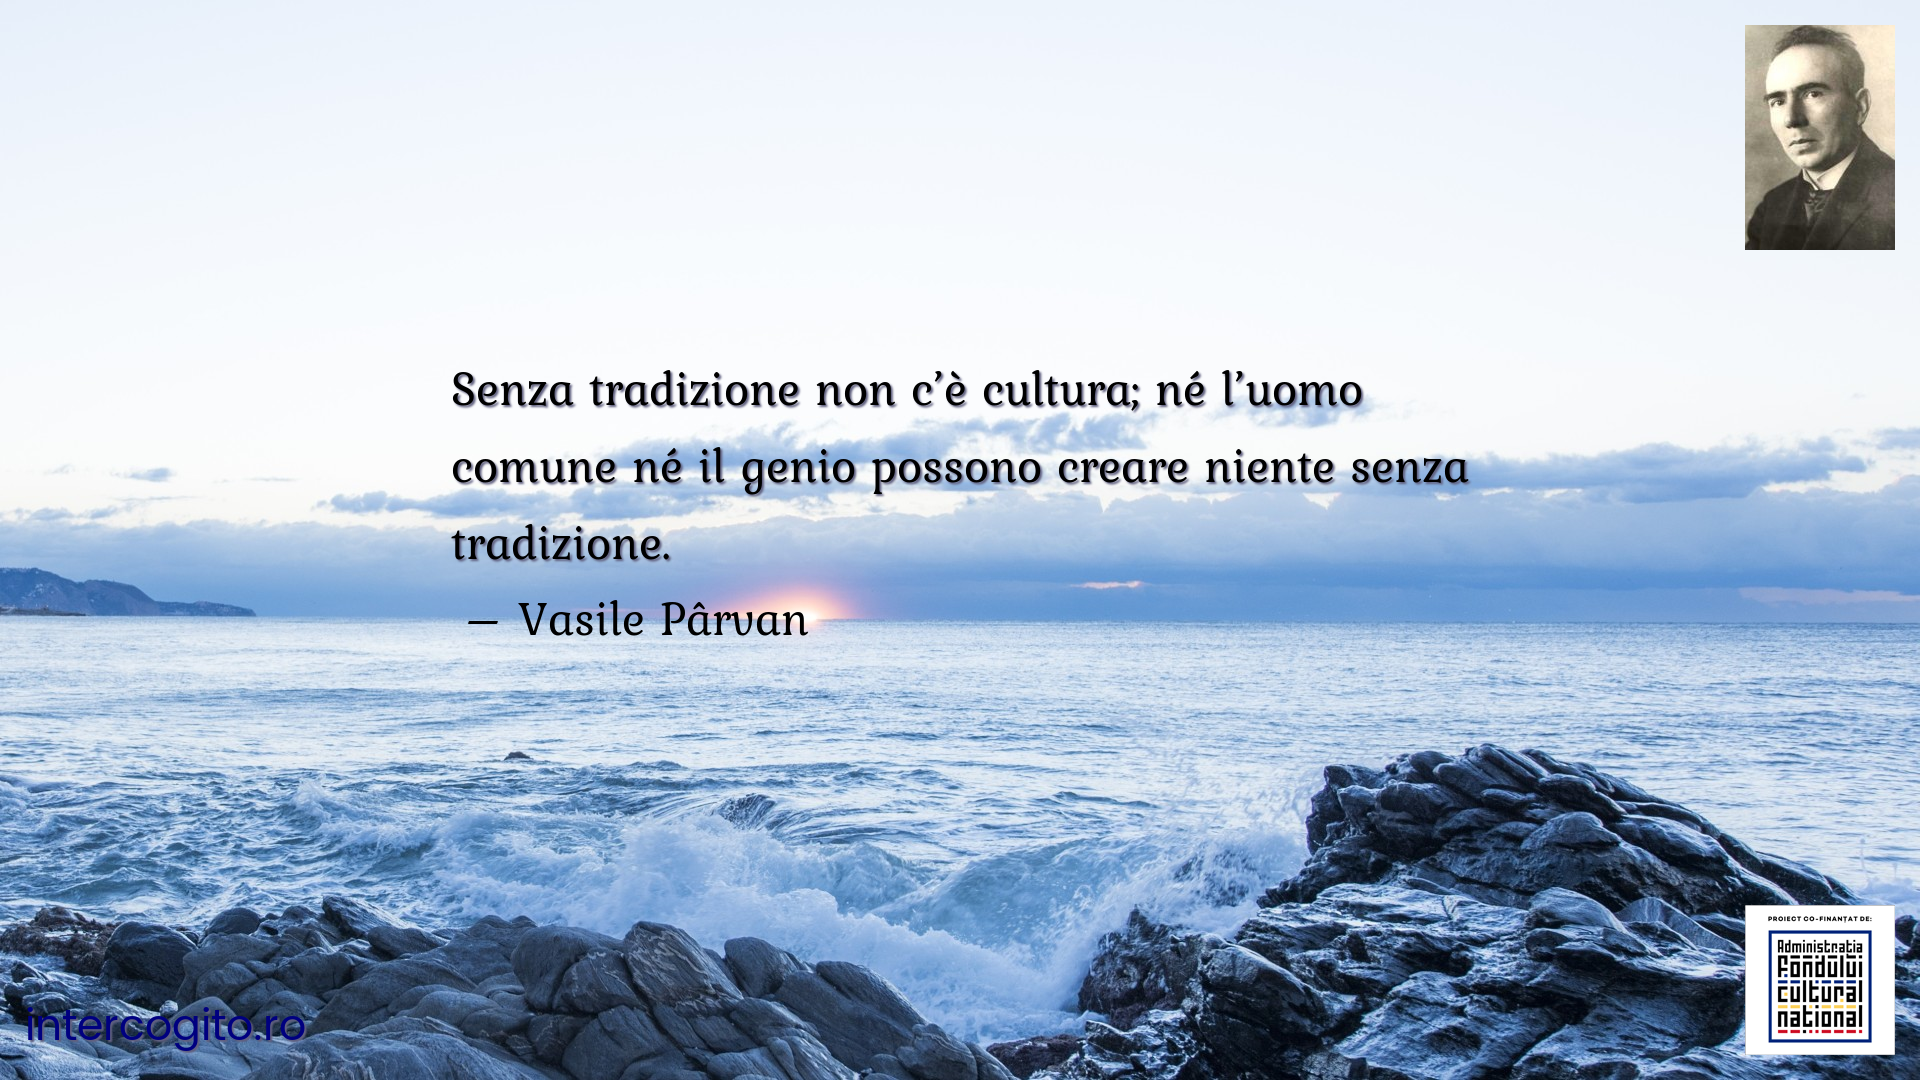 Senza tradizione non c’è cultura; né l’uomo comune né il genio possono creare niente senza tradizione.